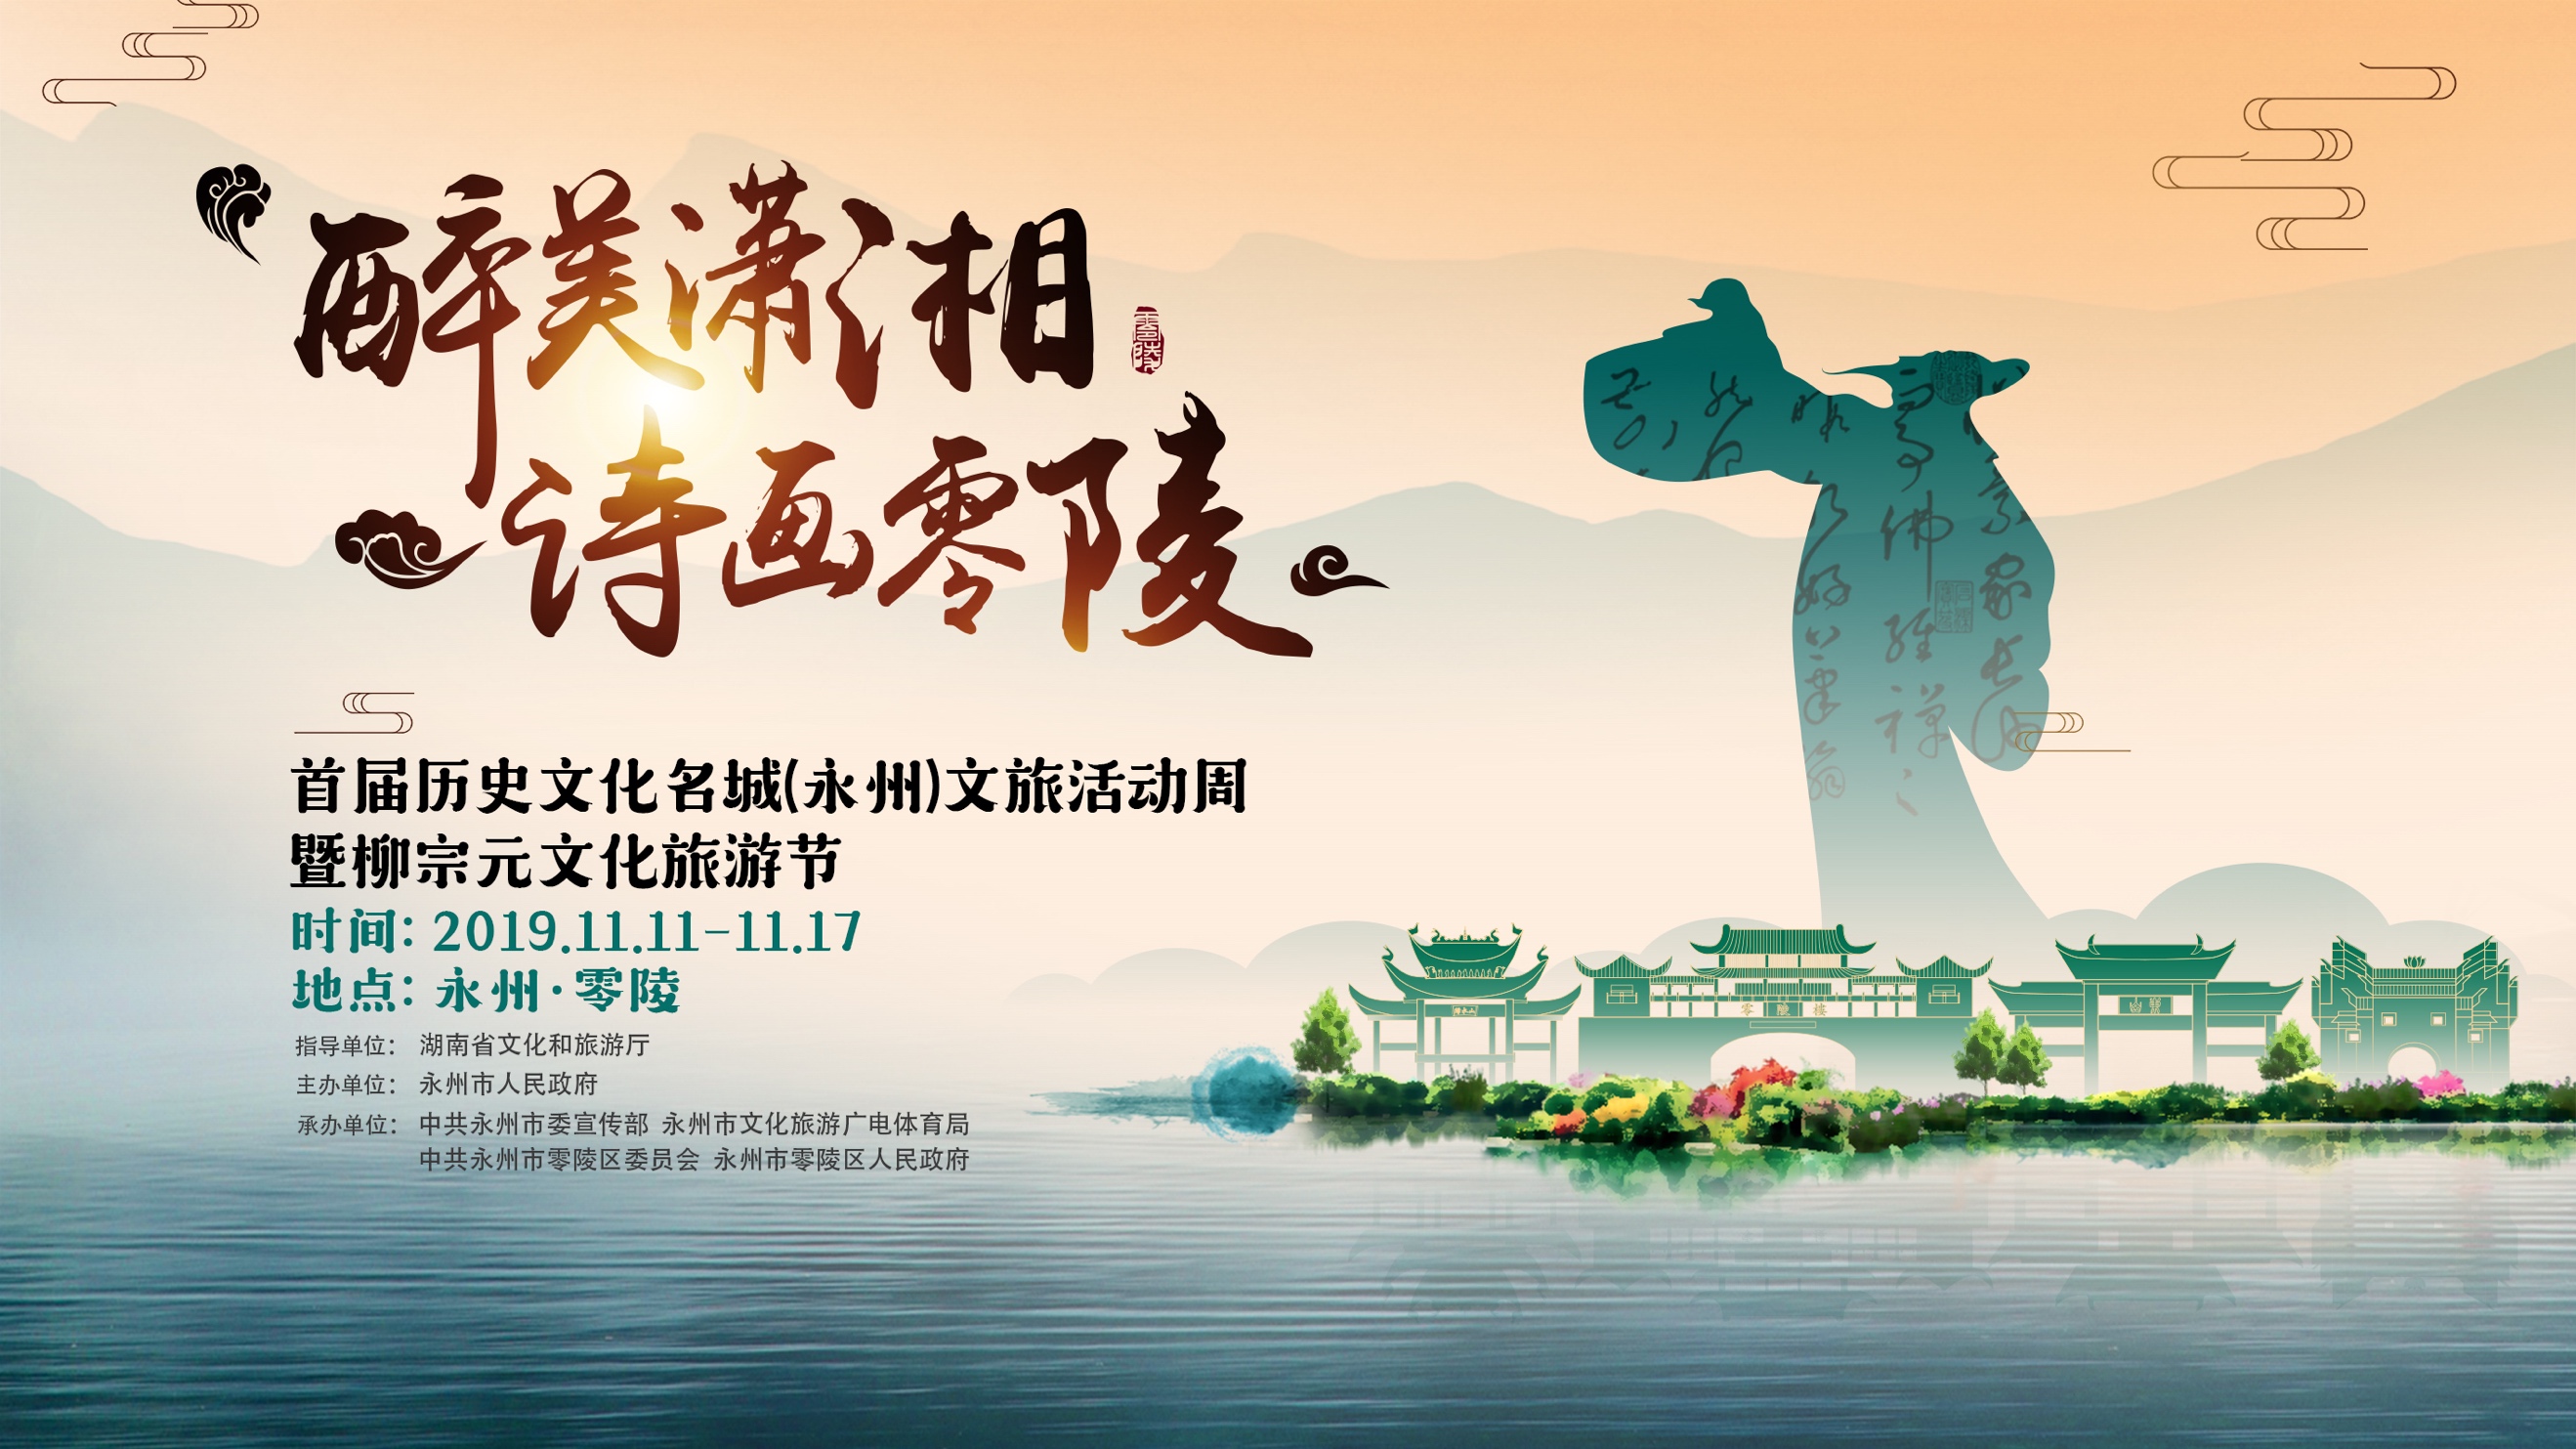 首届历史文化名城(永州)文旅活动周暨柳宗元文化旅游节将于2019年11月11日开幕